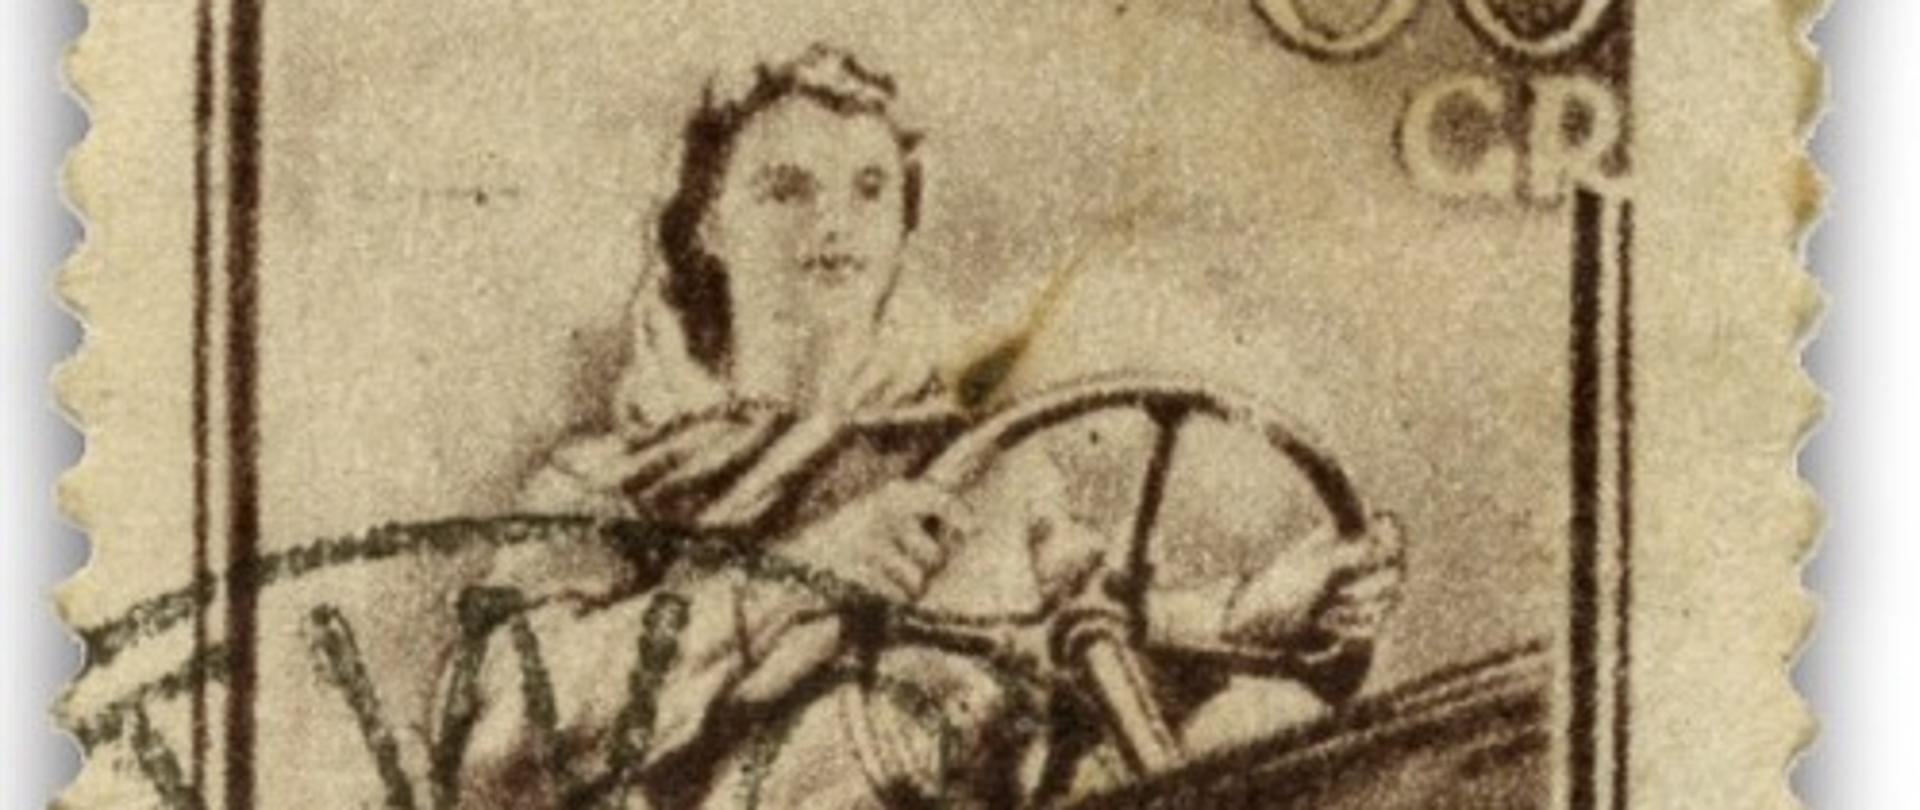 znaczek pocztowy przedstawiający kobietę kierującą traktorem